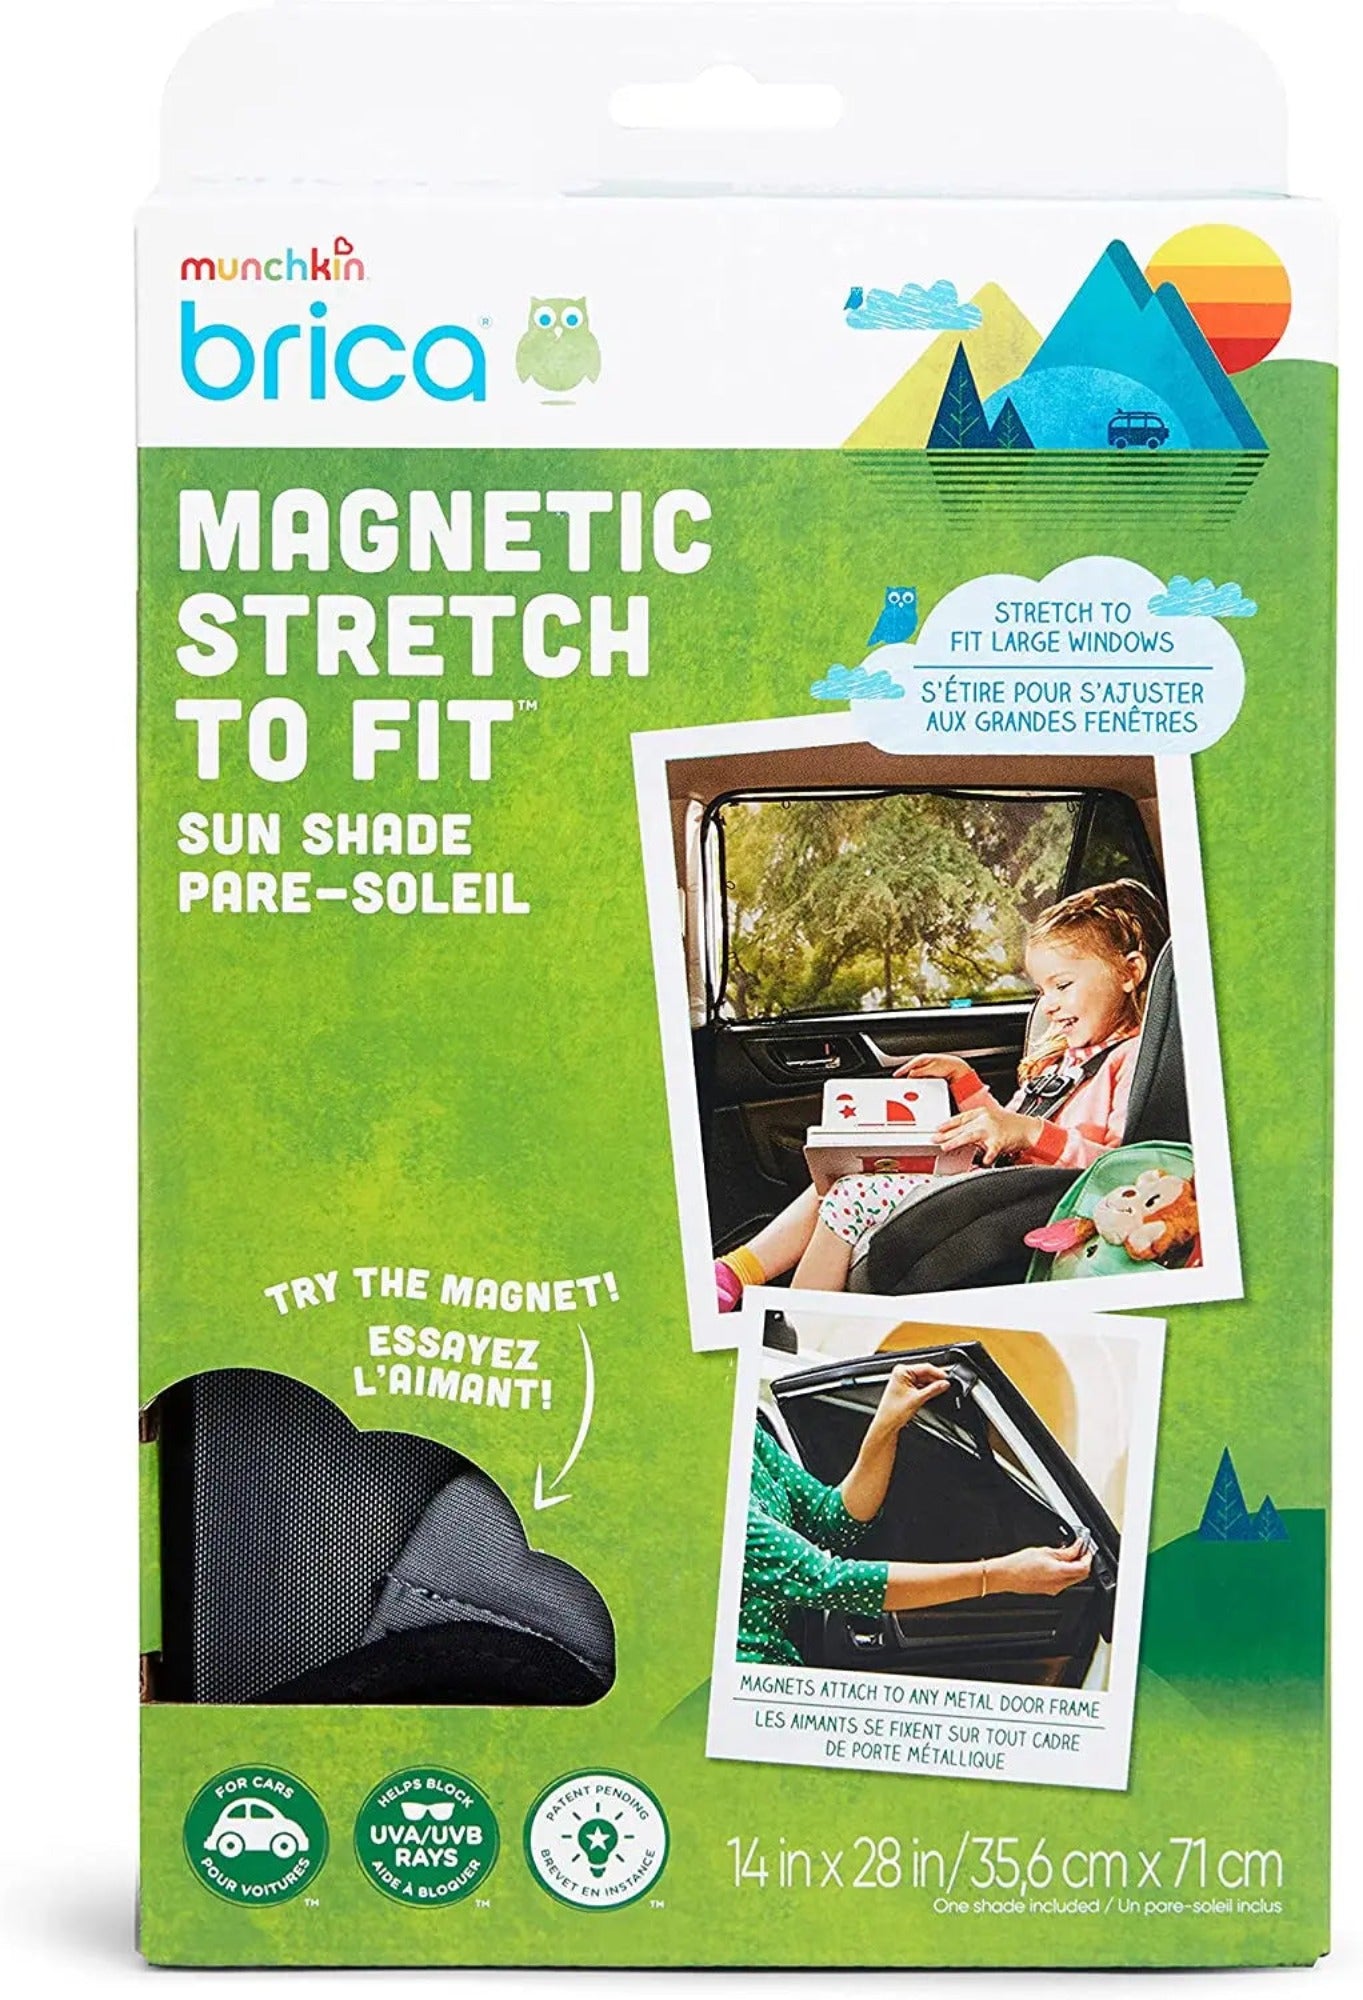 Car accessories Munchkin Brica Magnetic Stretch to Fit Sun Shade, Black Brica 49.95